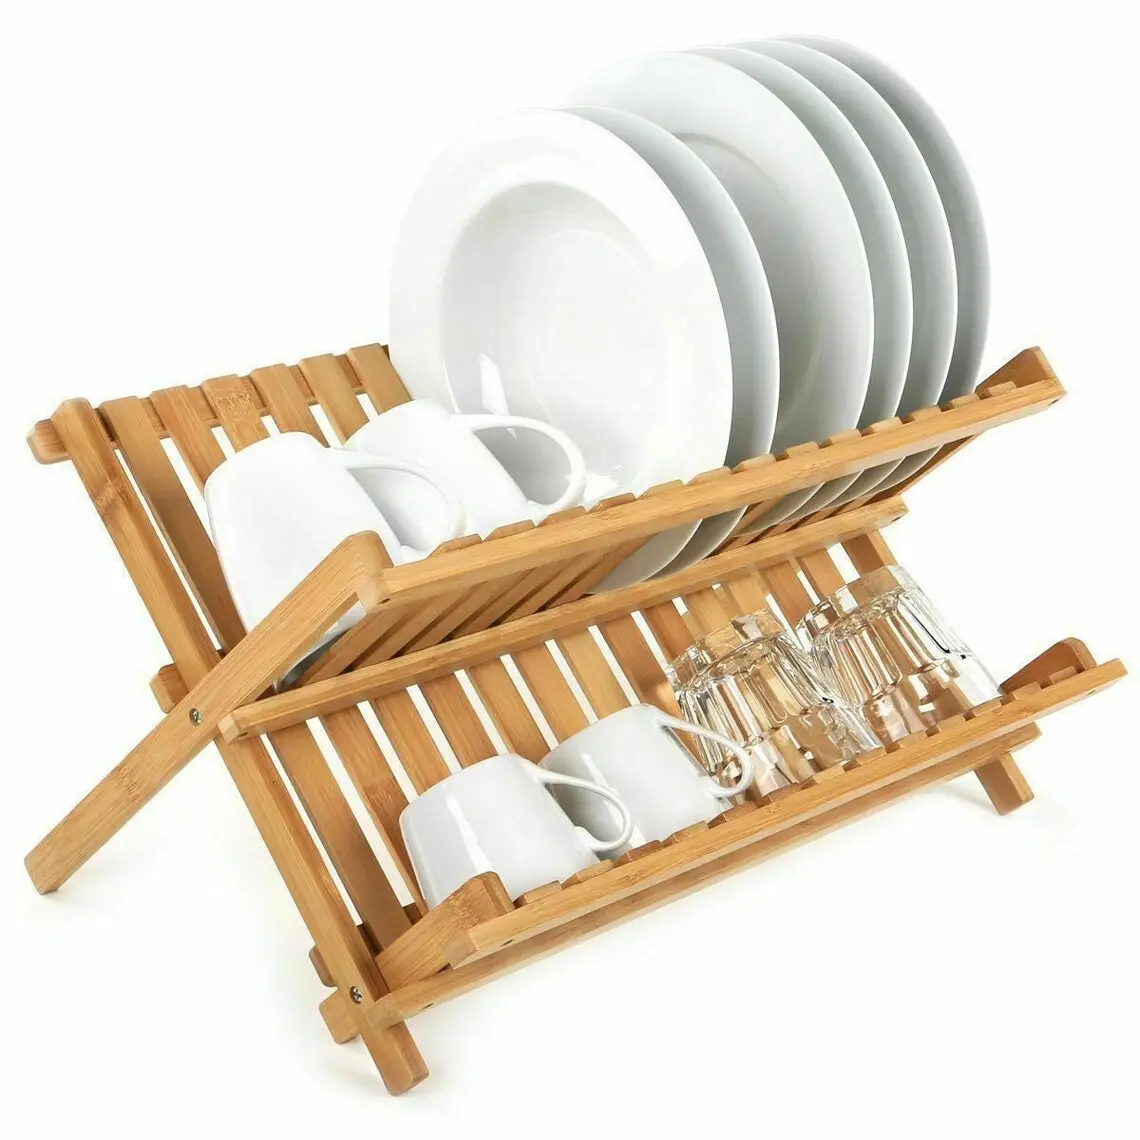 Деревянный бамбуковый ящик, разделитель, поднос, держатель посуды, выдвижной кухонный ящик, органайзер, бамбуковый поднос для столовых приборов